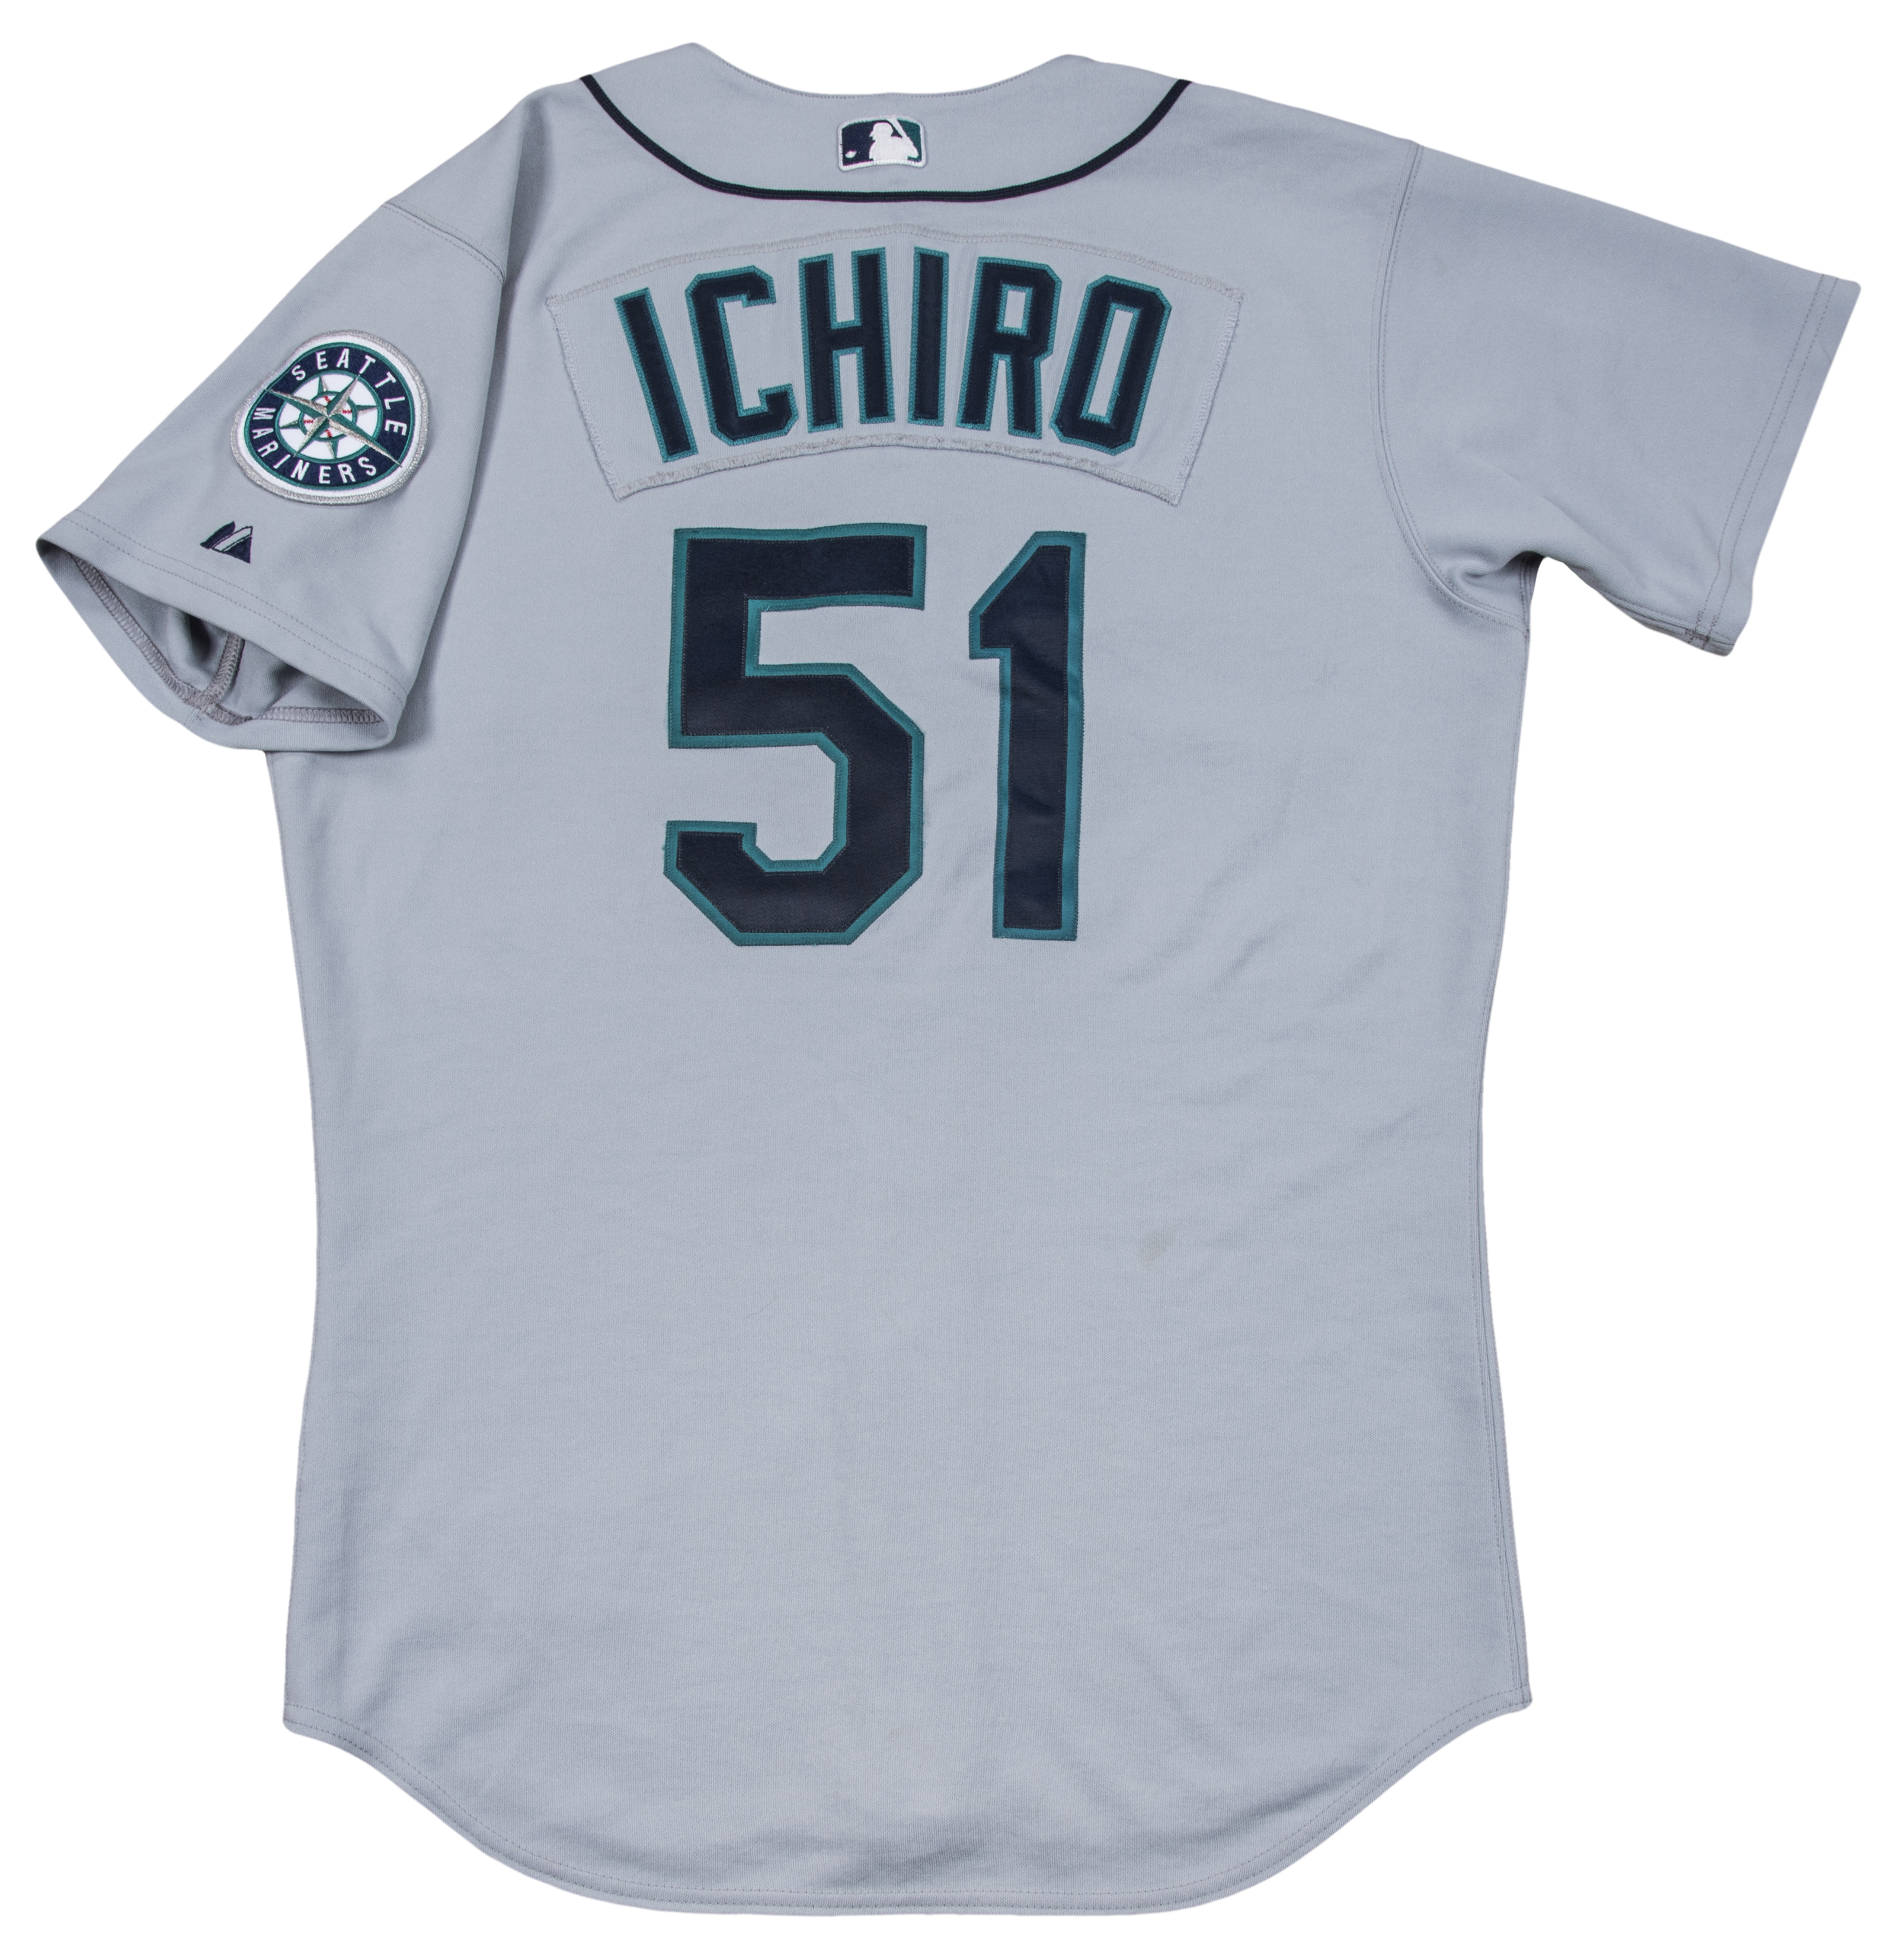 ichiro game used jersey